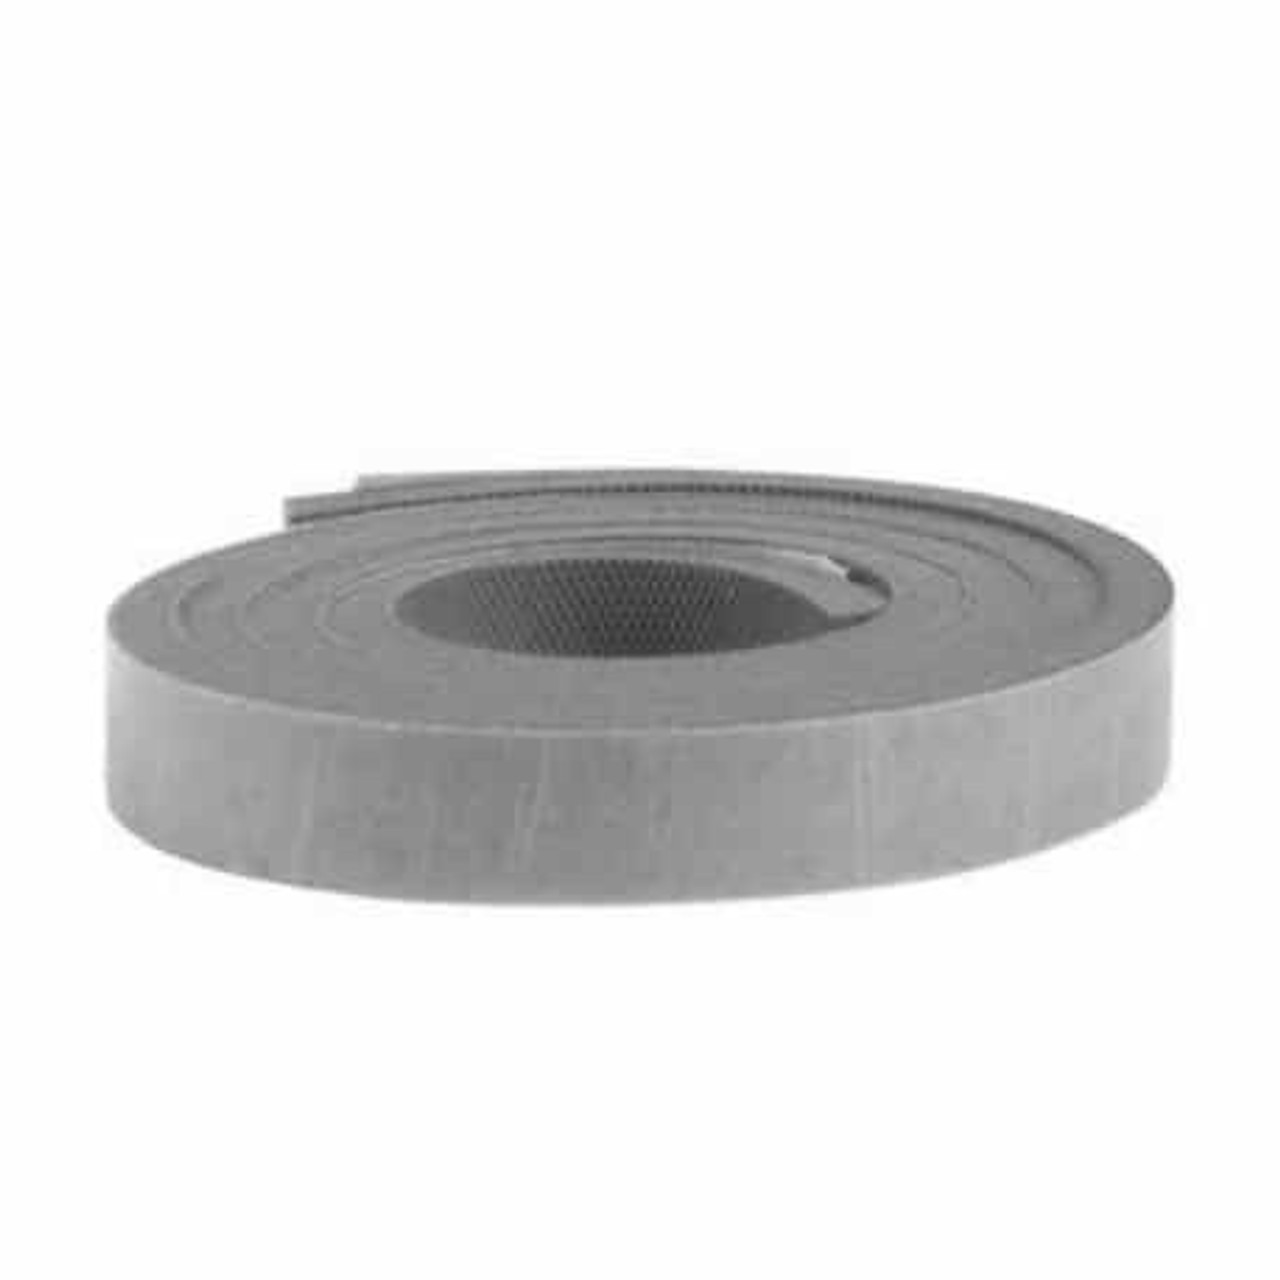 Silicone Foam Tape - High Temperature PSA - S600 - Pres-On